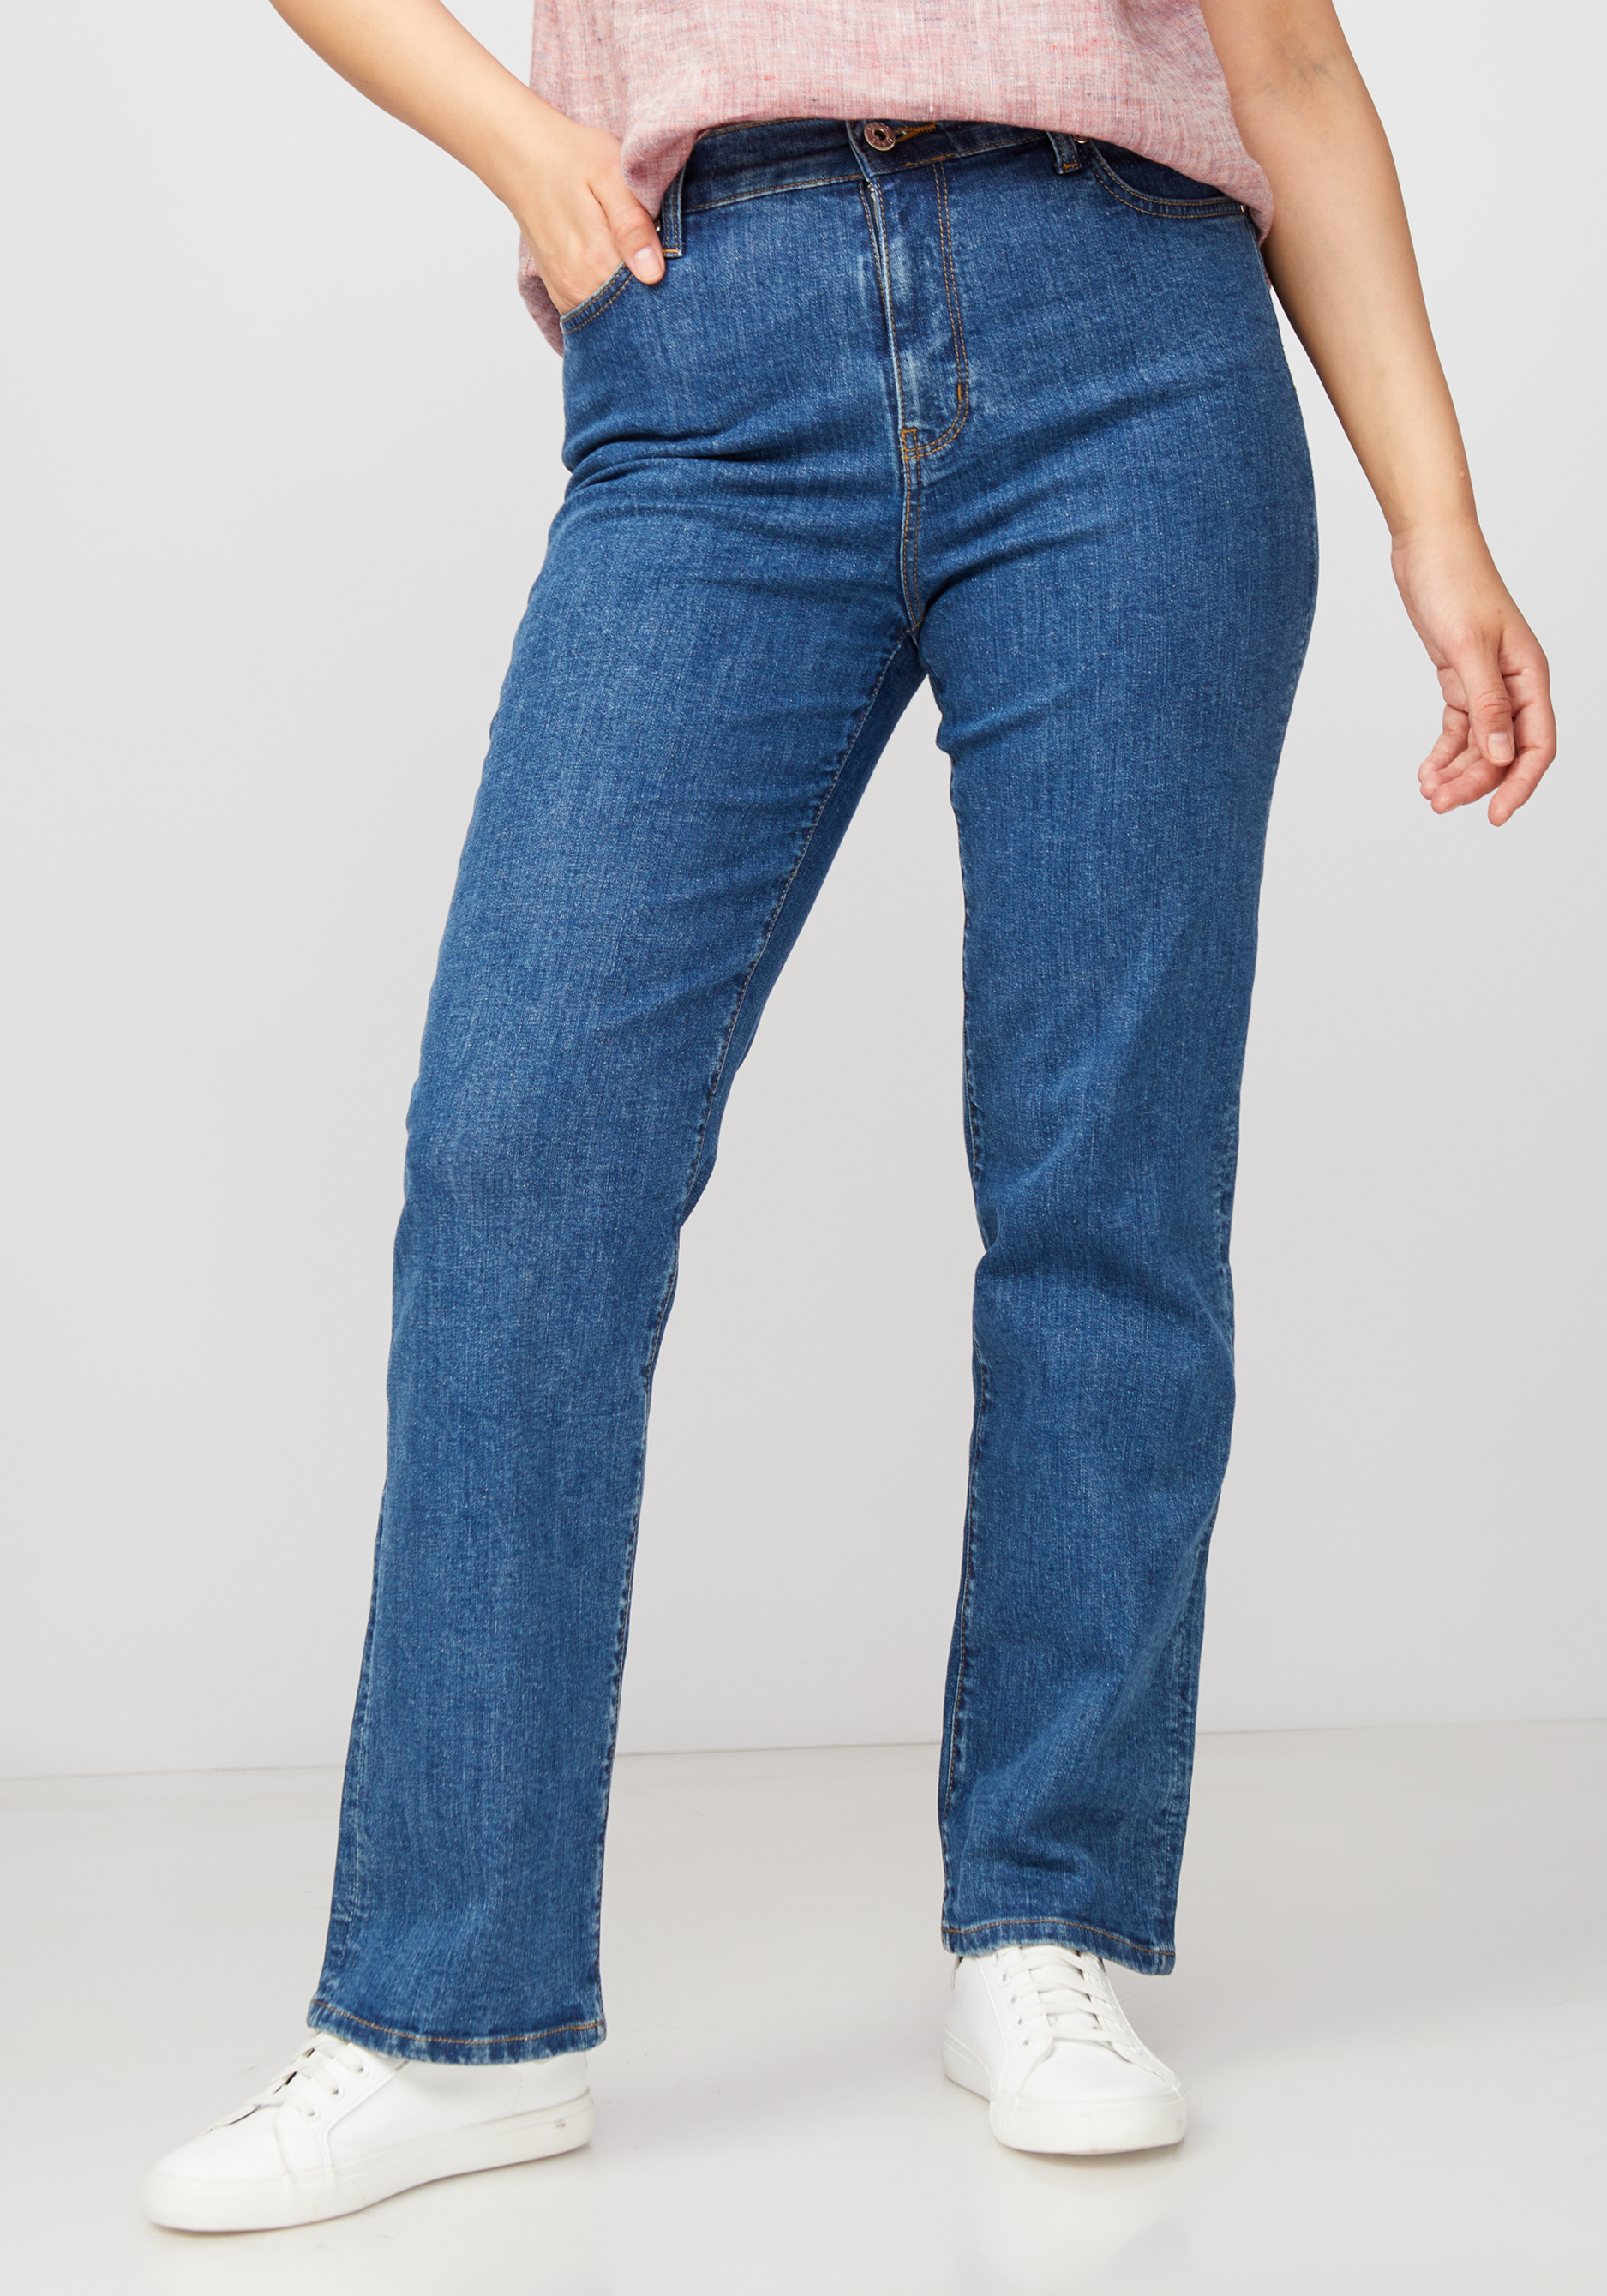 Джинсы с принтом на кармане джинсы прямого кроя с вышивкой на кармане